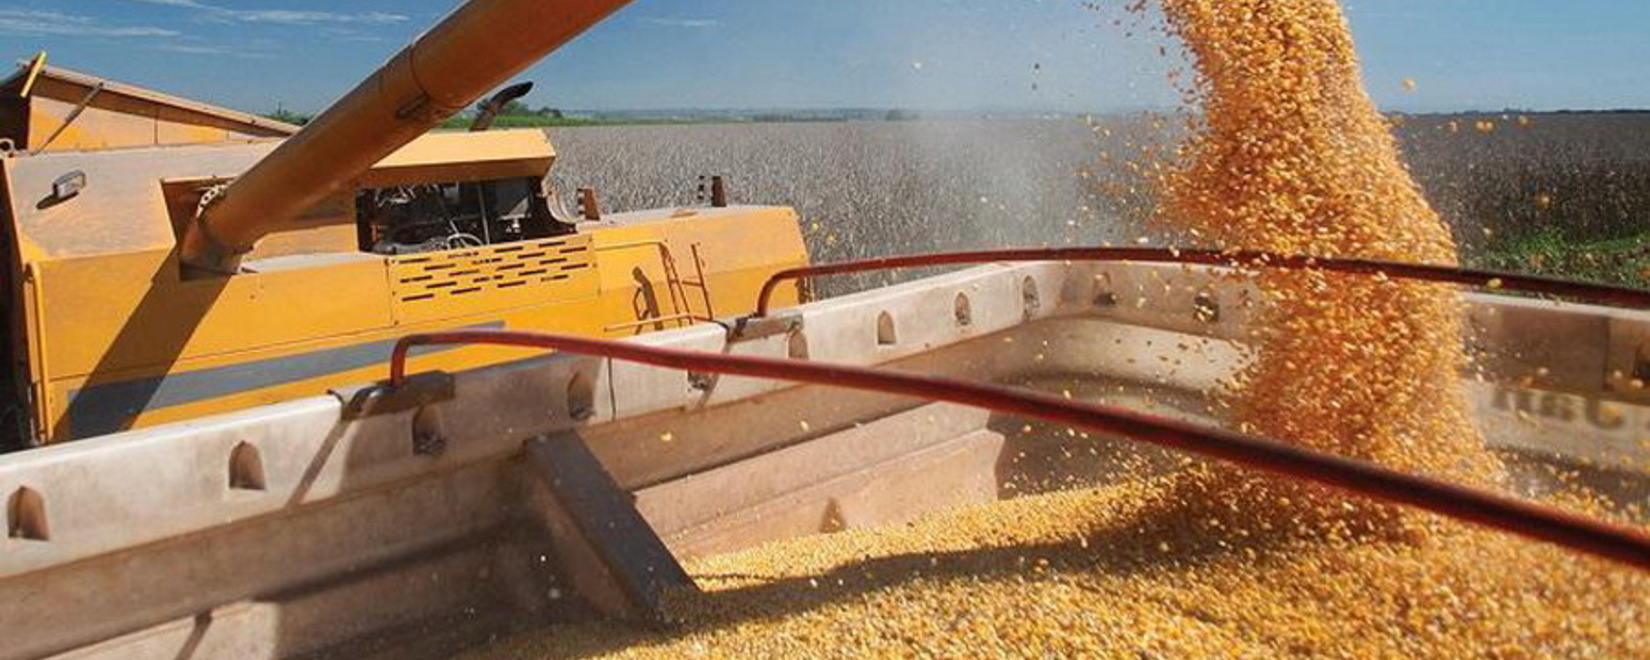 Турция с 1 мая ввела пошлину на импорт пшеницы, ячменя и кукурузы в размере 130%